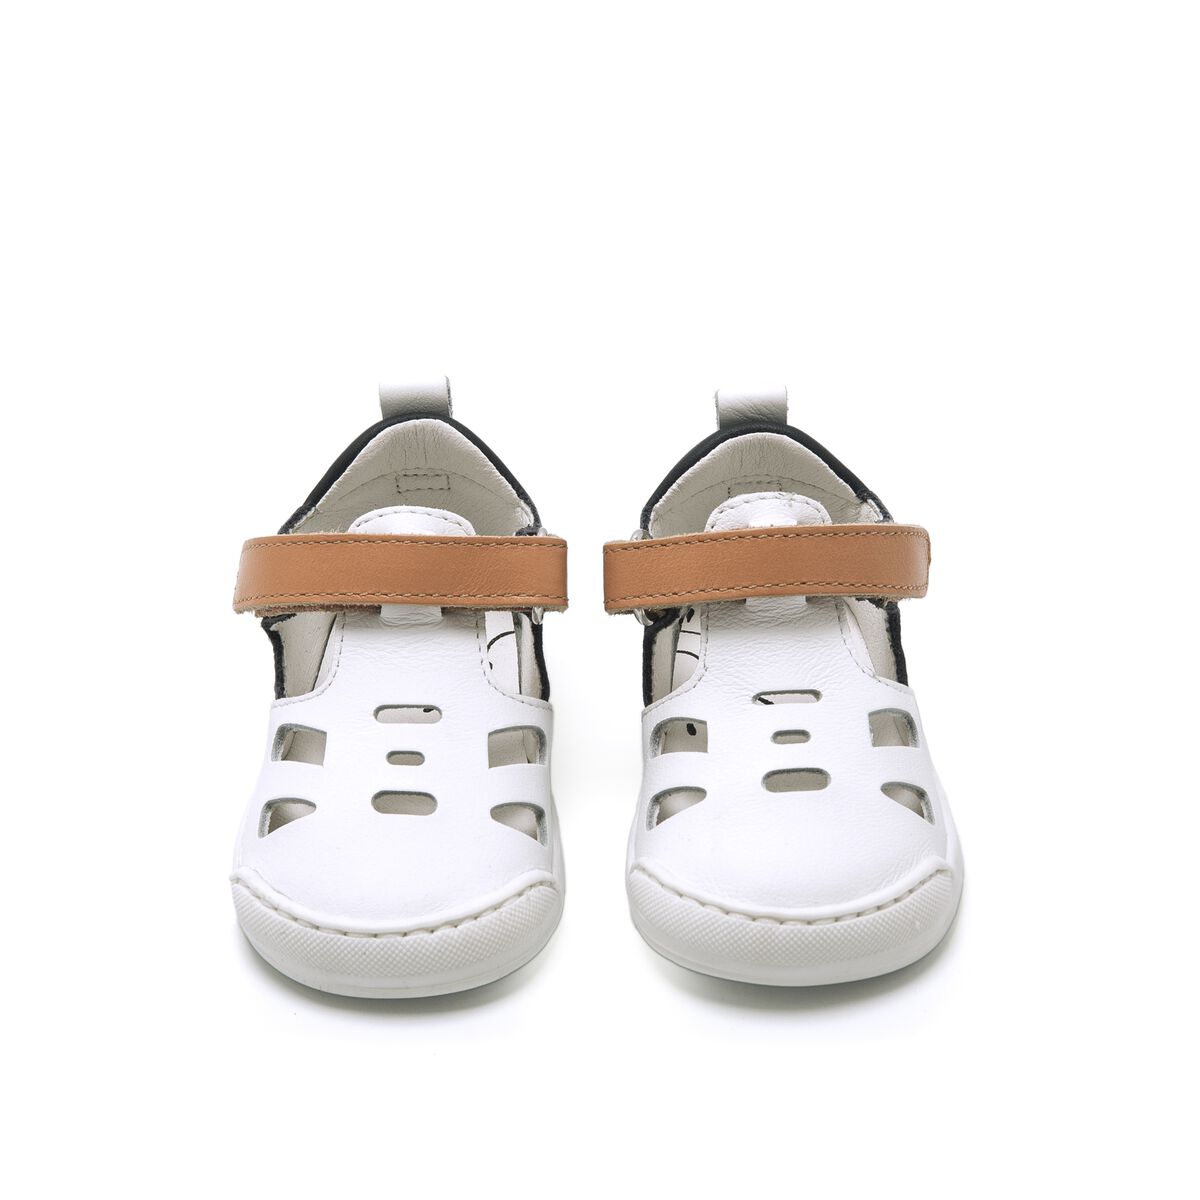 Sandalias de Nino modelo FREE BABY de MTNG image number 2